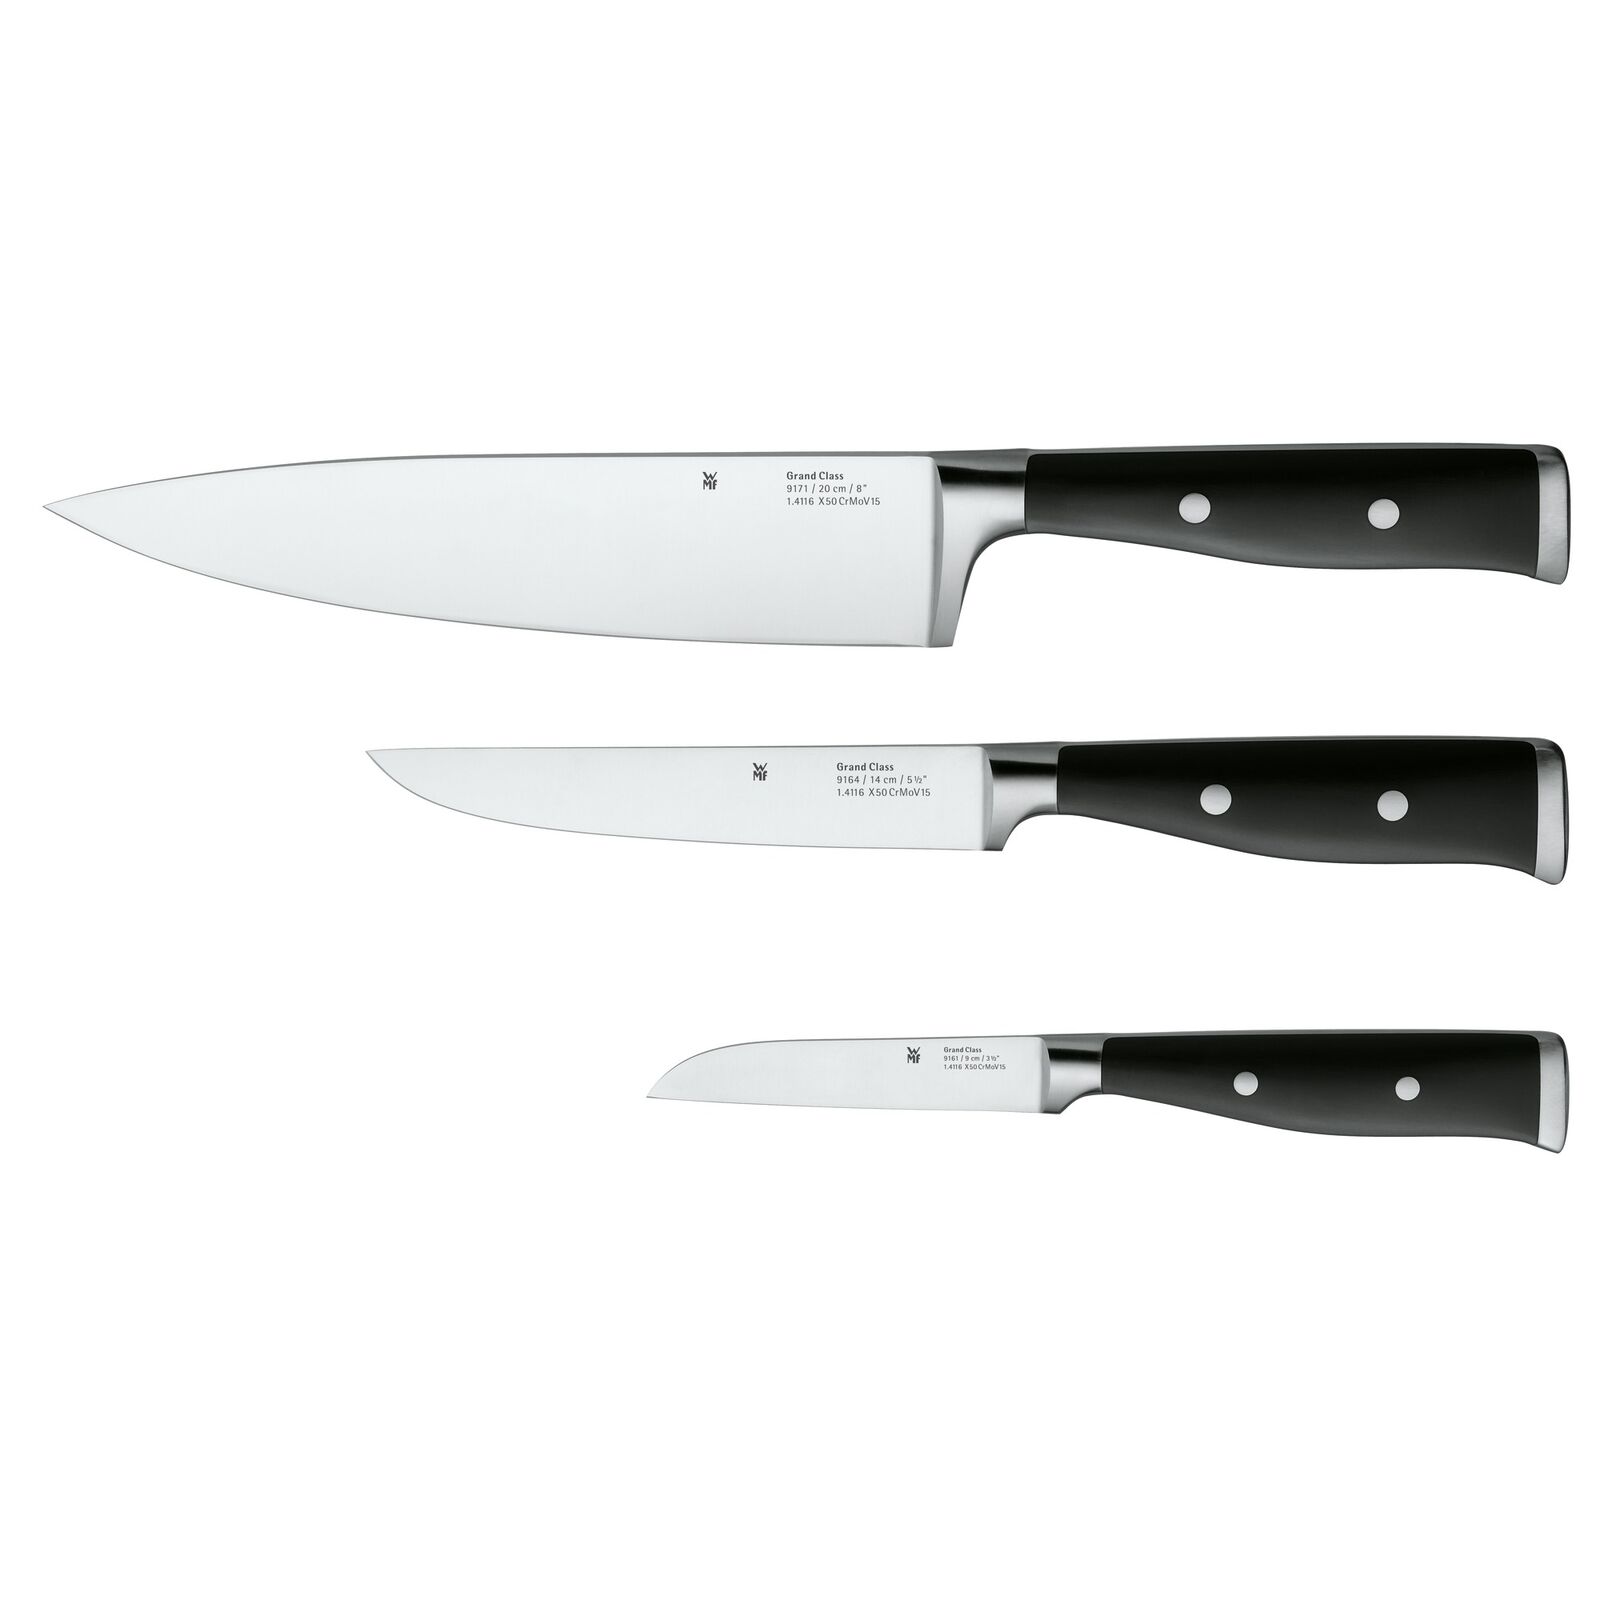 WMF Messer-Set Küchenmesser Kochmesser, 3-teilig, Grand Class Stahl, schwarz